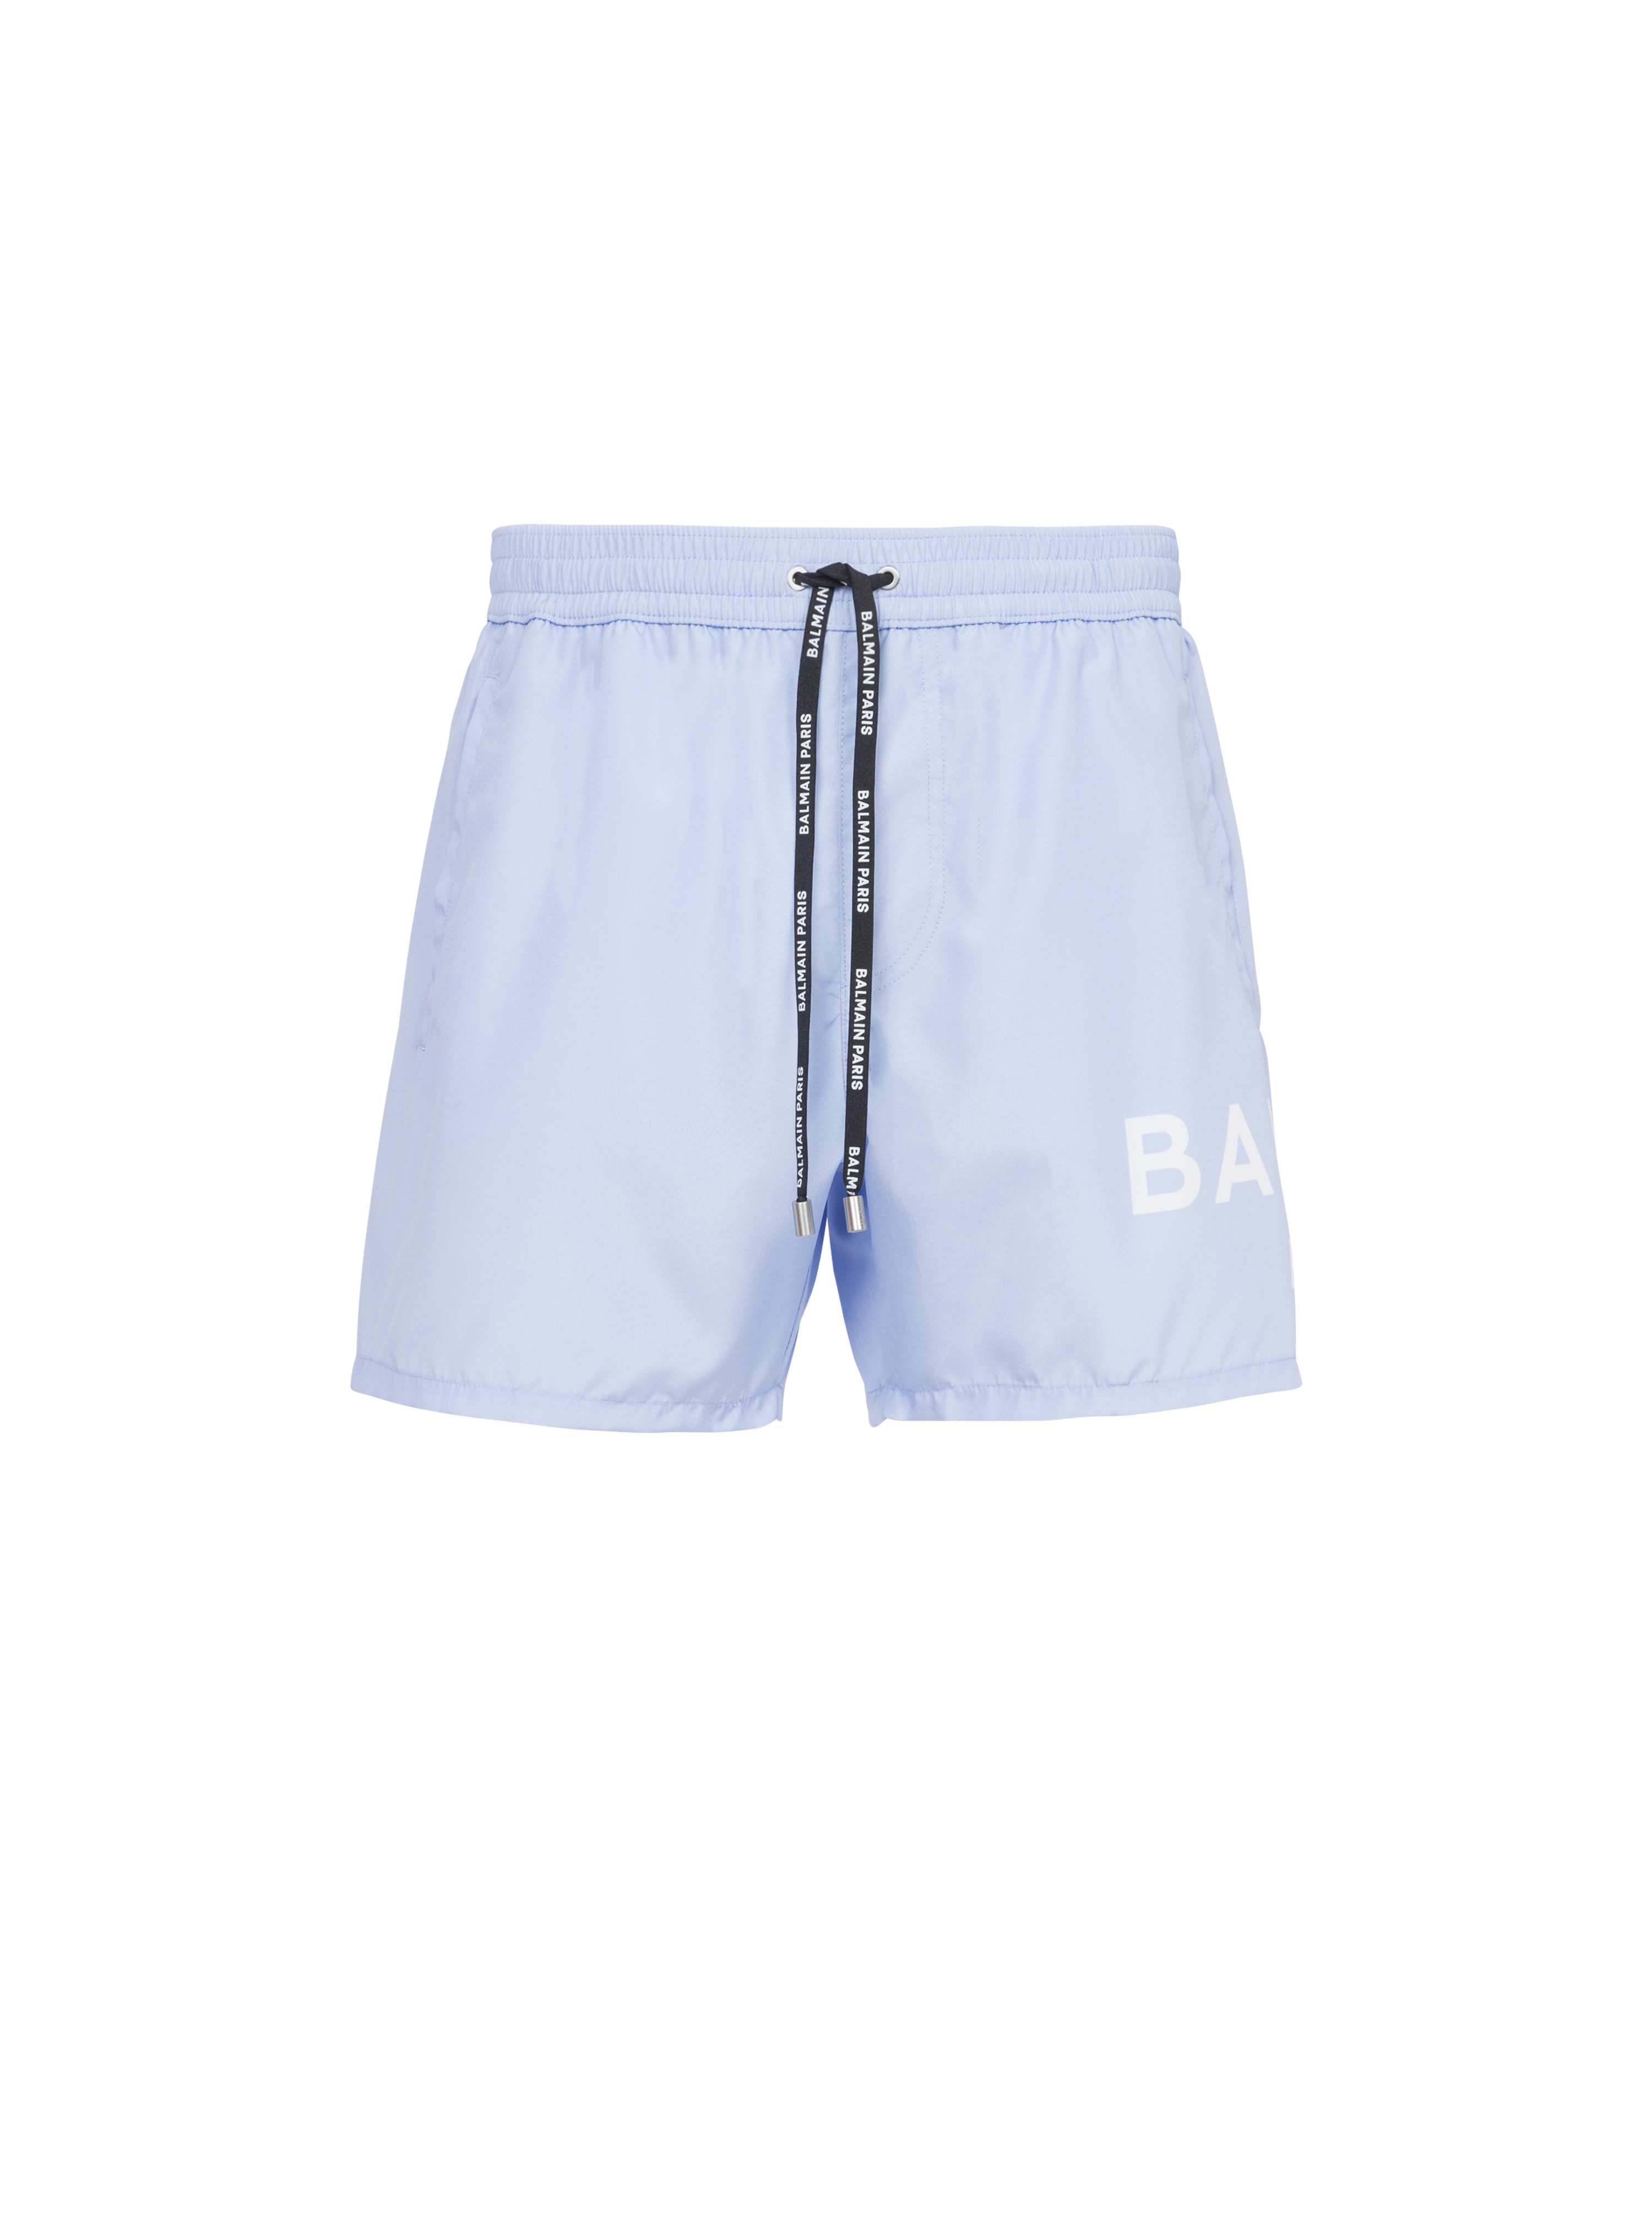 Shorts da bagno con logo Balmain, blu